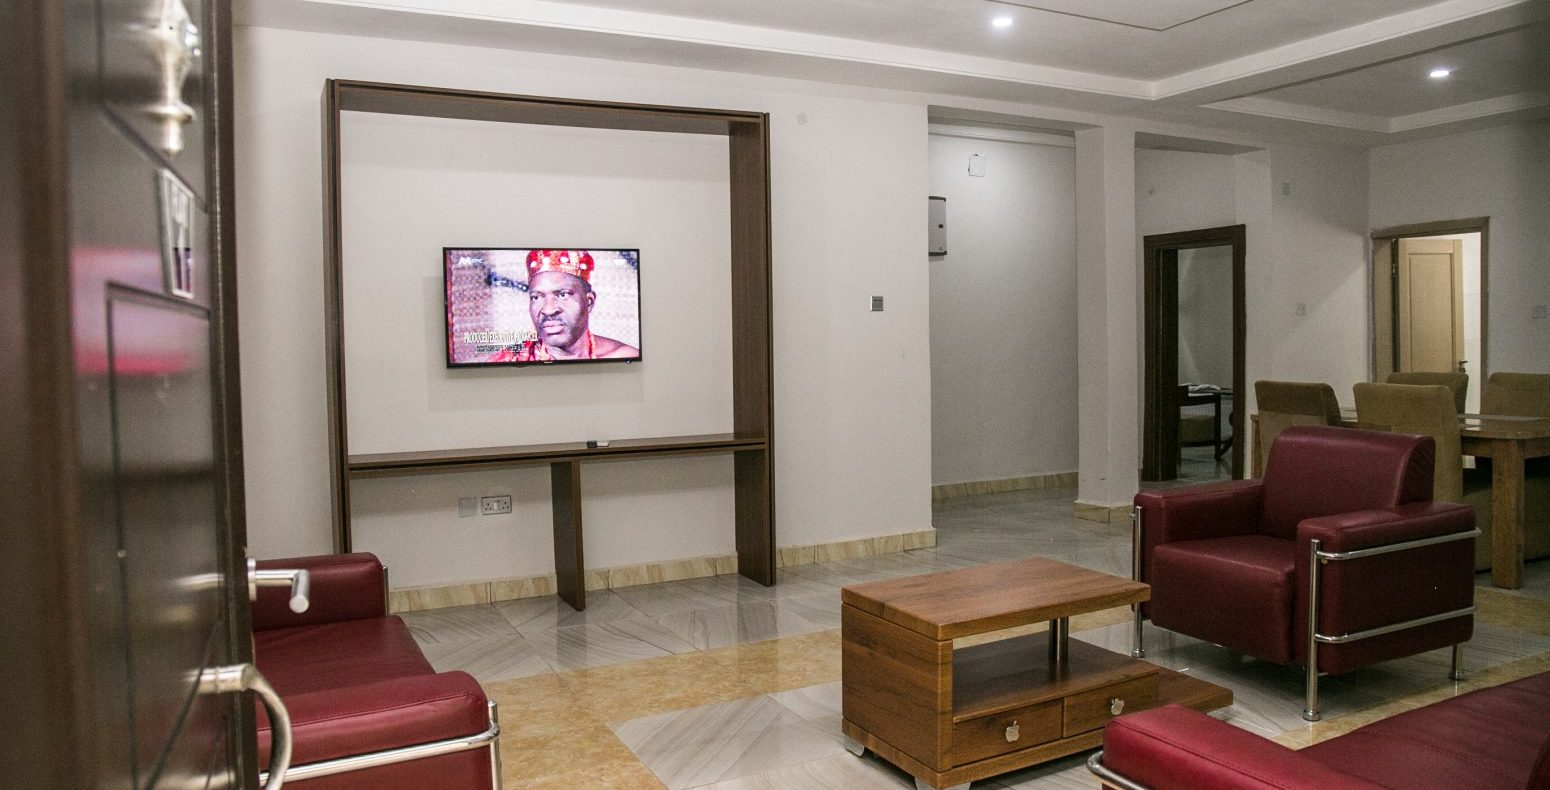 Hotel Deluxe Suites 2 Bedroom Suite In Abuja Nigeria